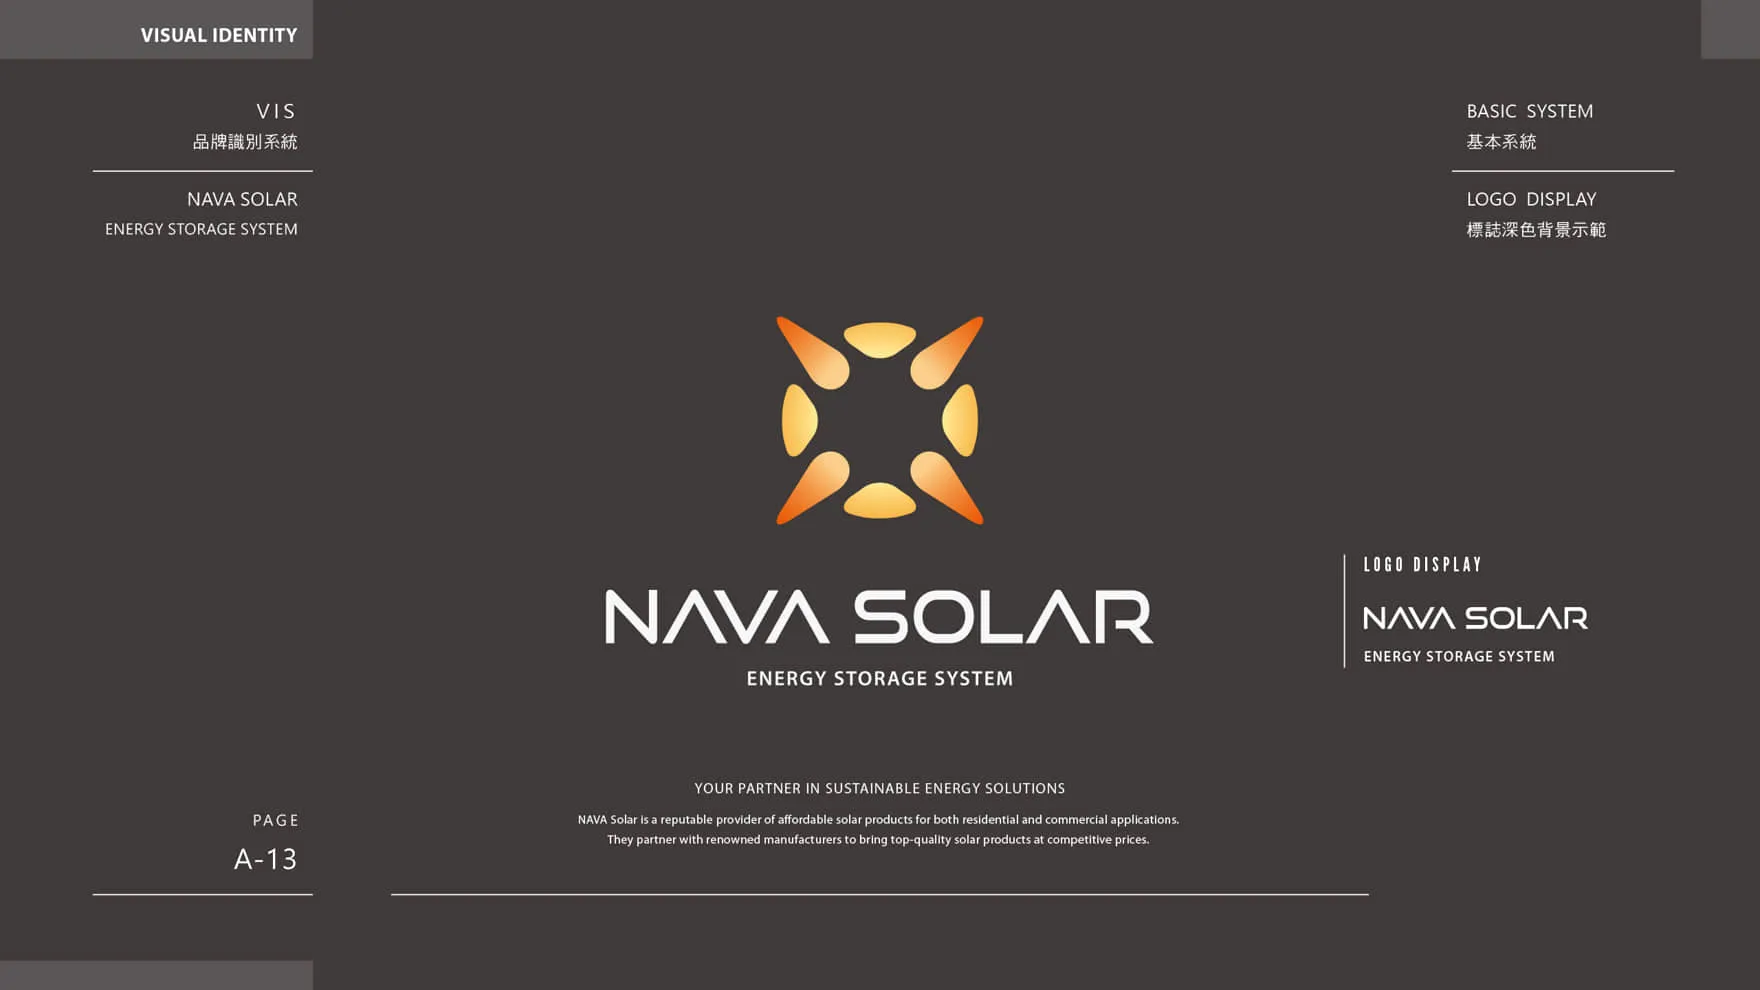 太陽能光電存儲品牌視覺LOGO反白規範